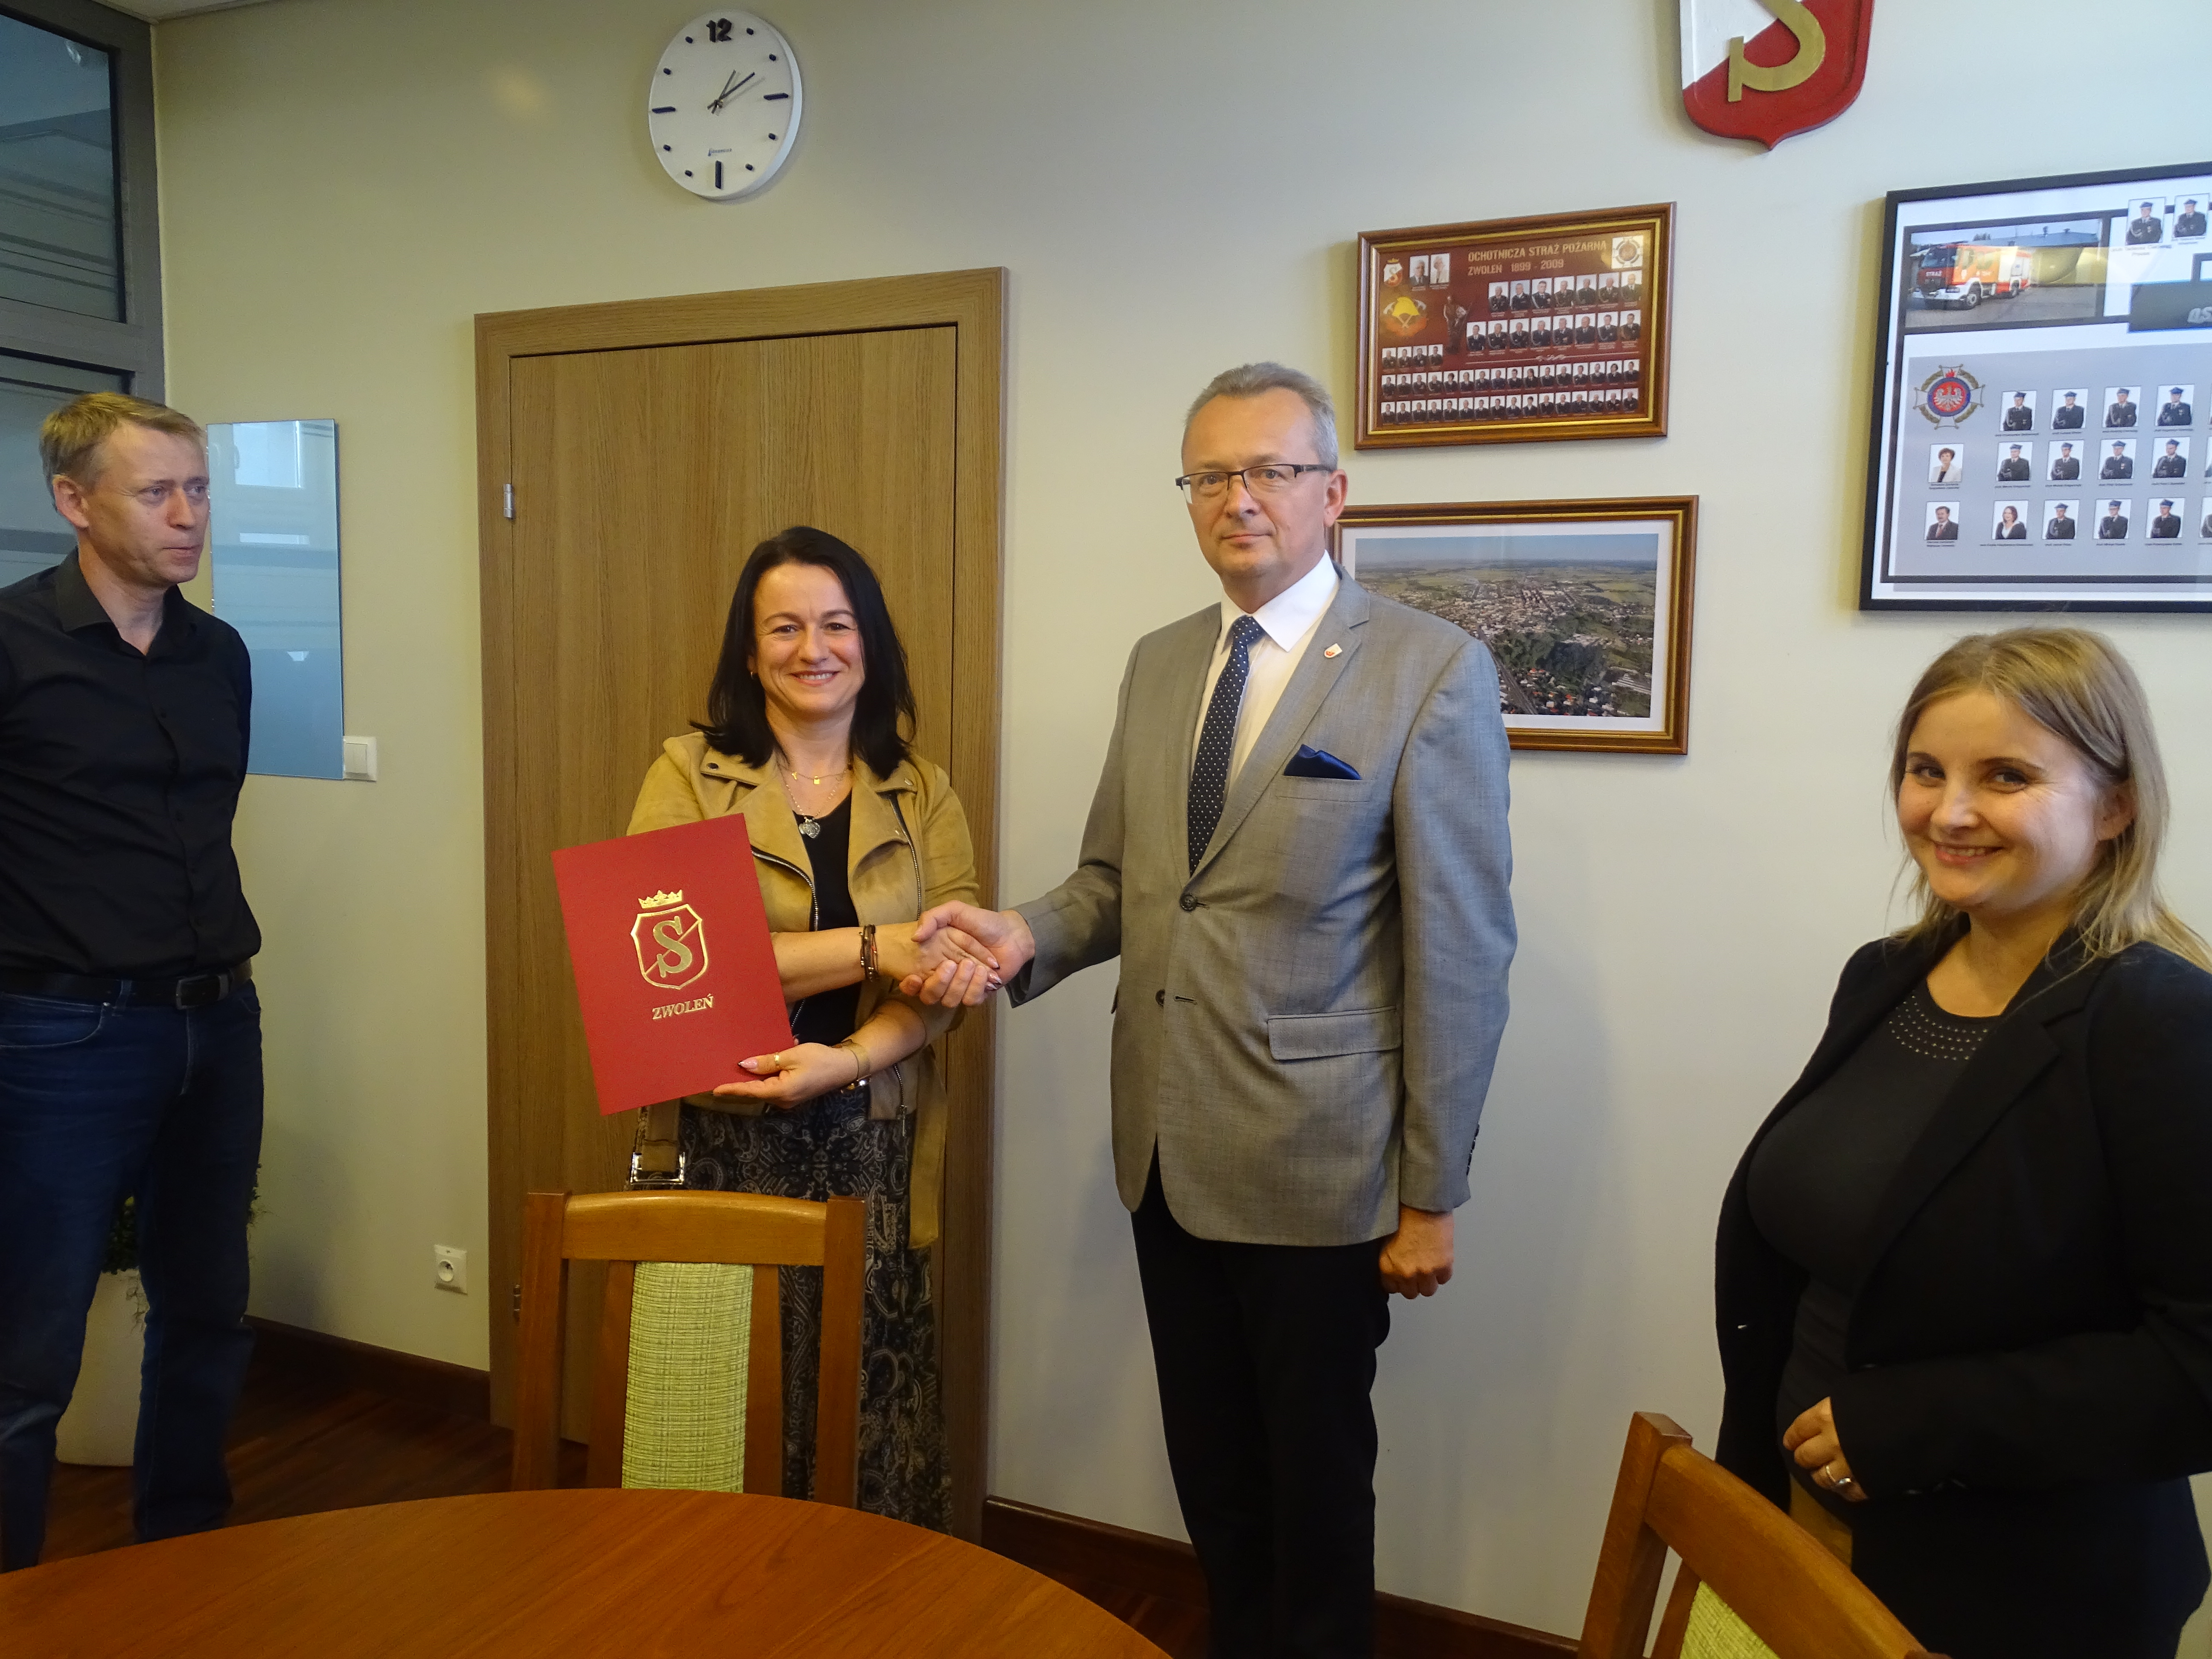 Burmistrz Zwolenia Arkadiusz Sulima podpisaną umowę przekazał wykonawcy, reprezentowanemu przez Ewę Cieślak-Kosiorowską.